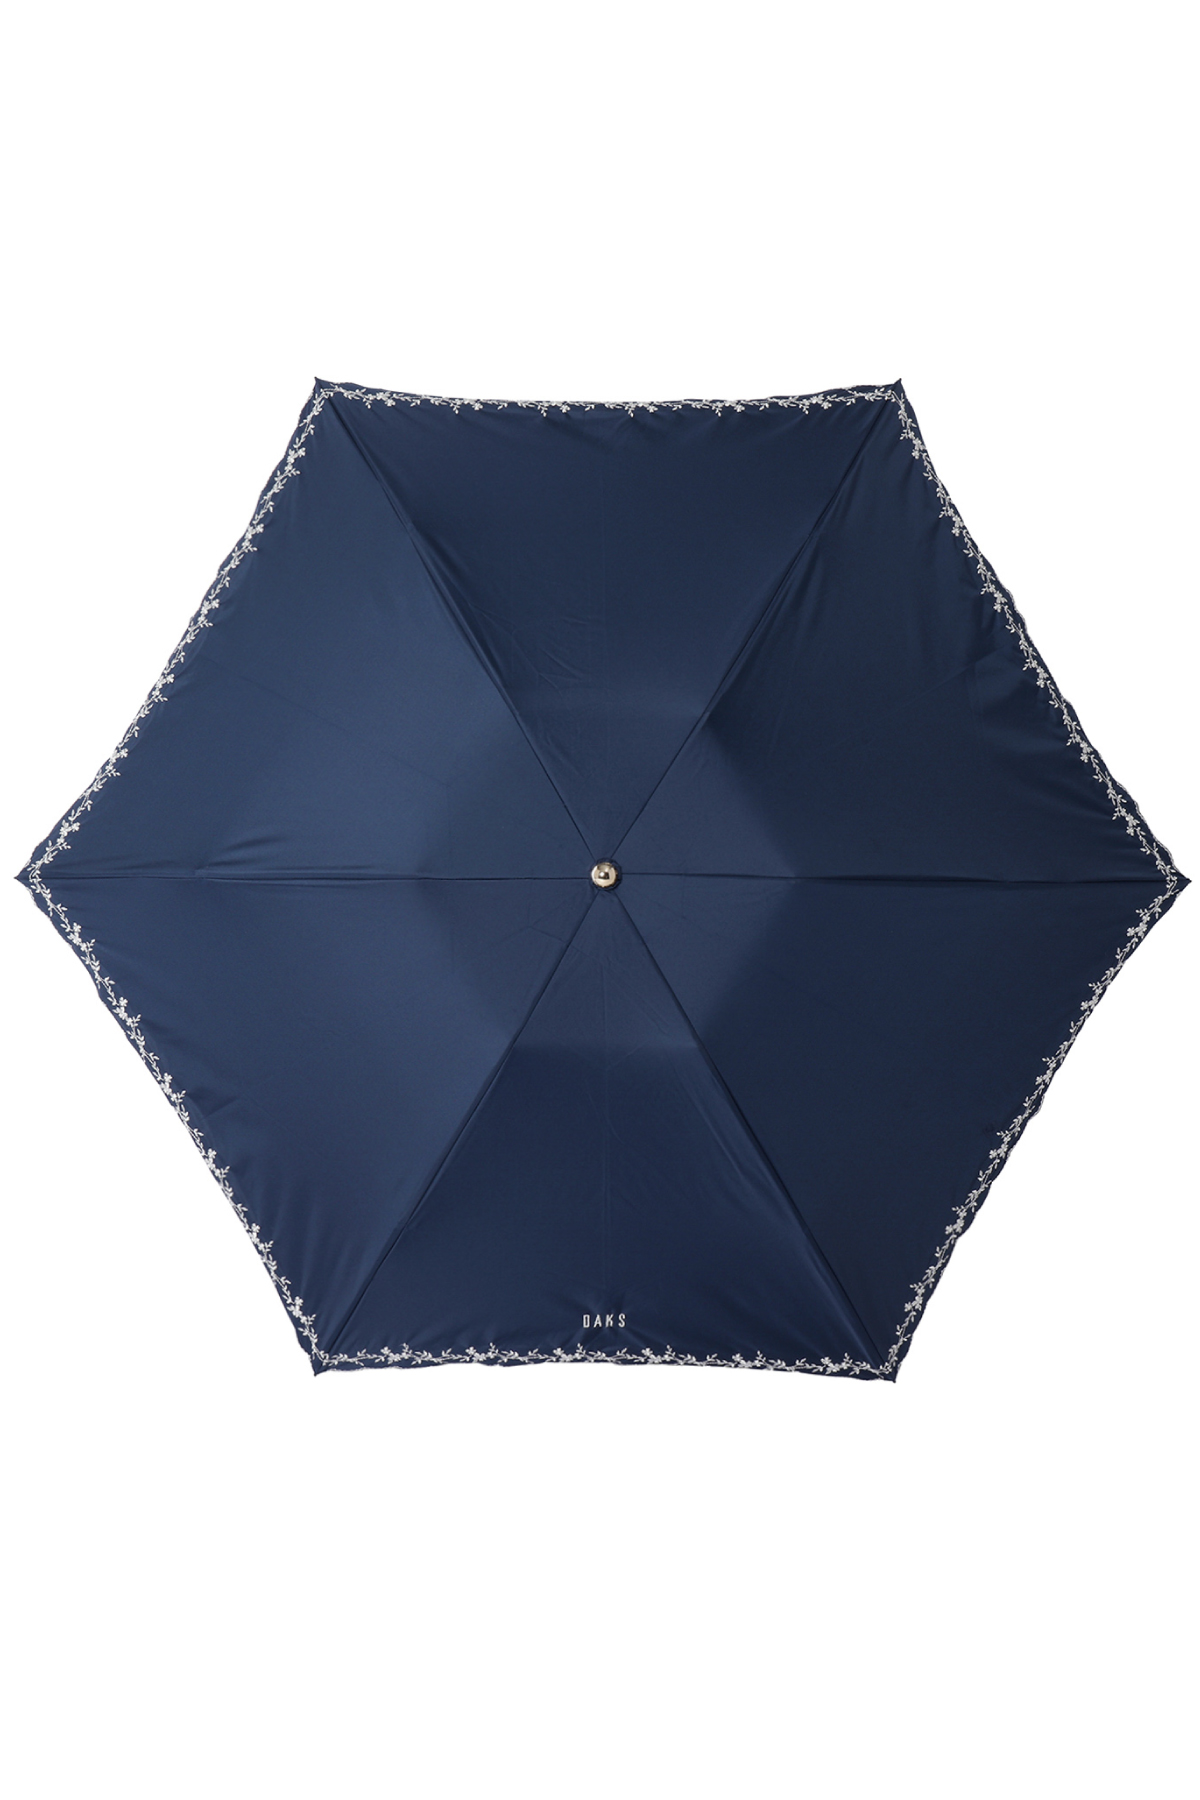 【日傘】ミニ折りたたみ傘裾刺繍 詳細画像 8